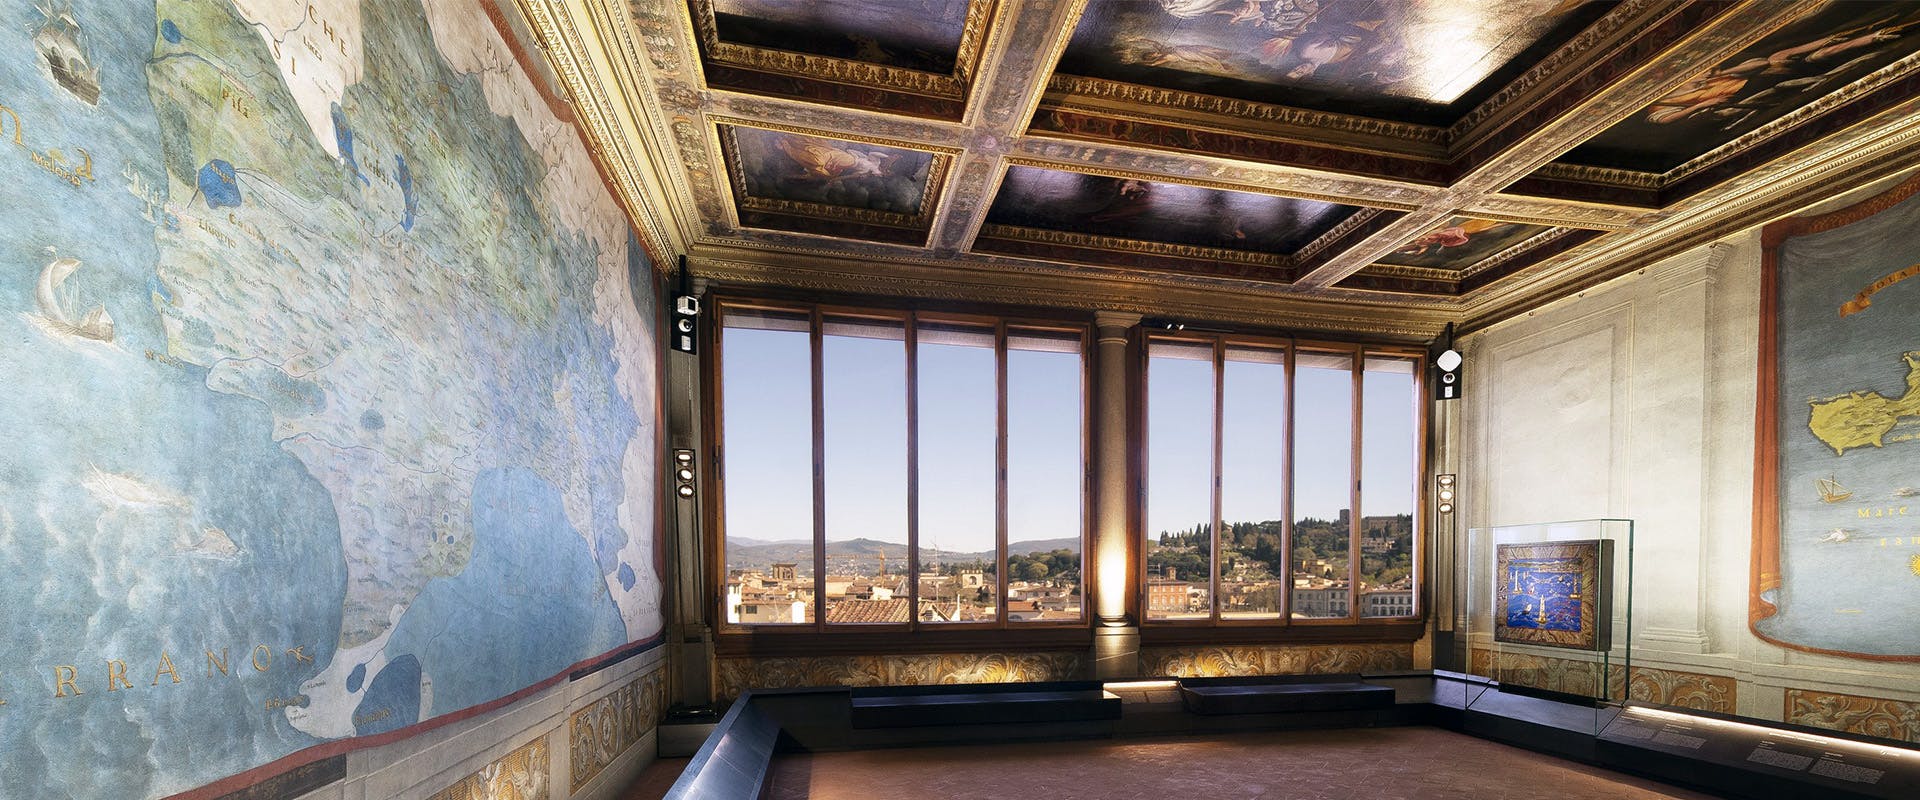 Interno di museo con affaccio su Firenze